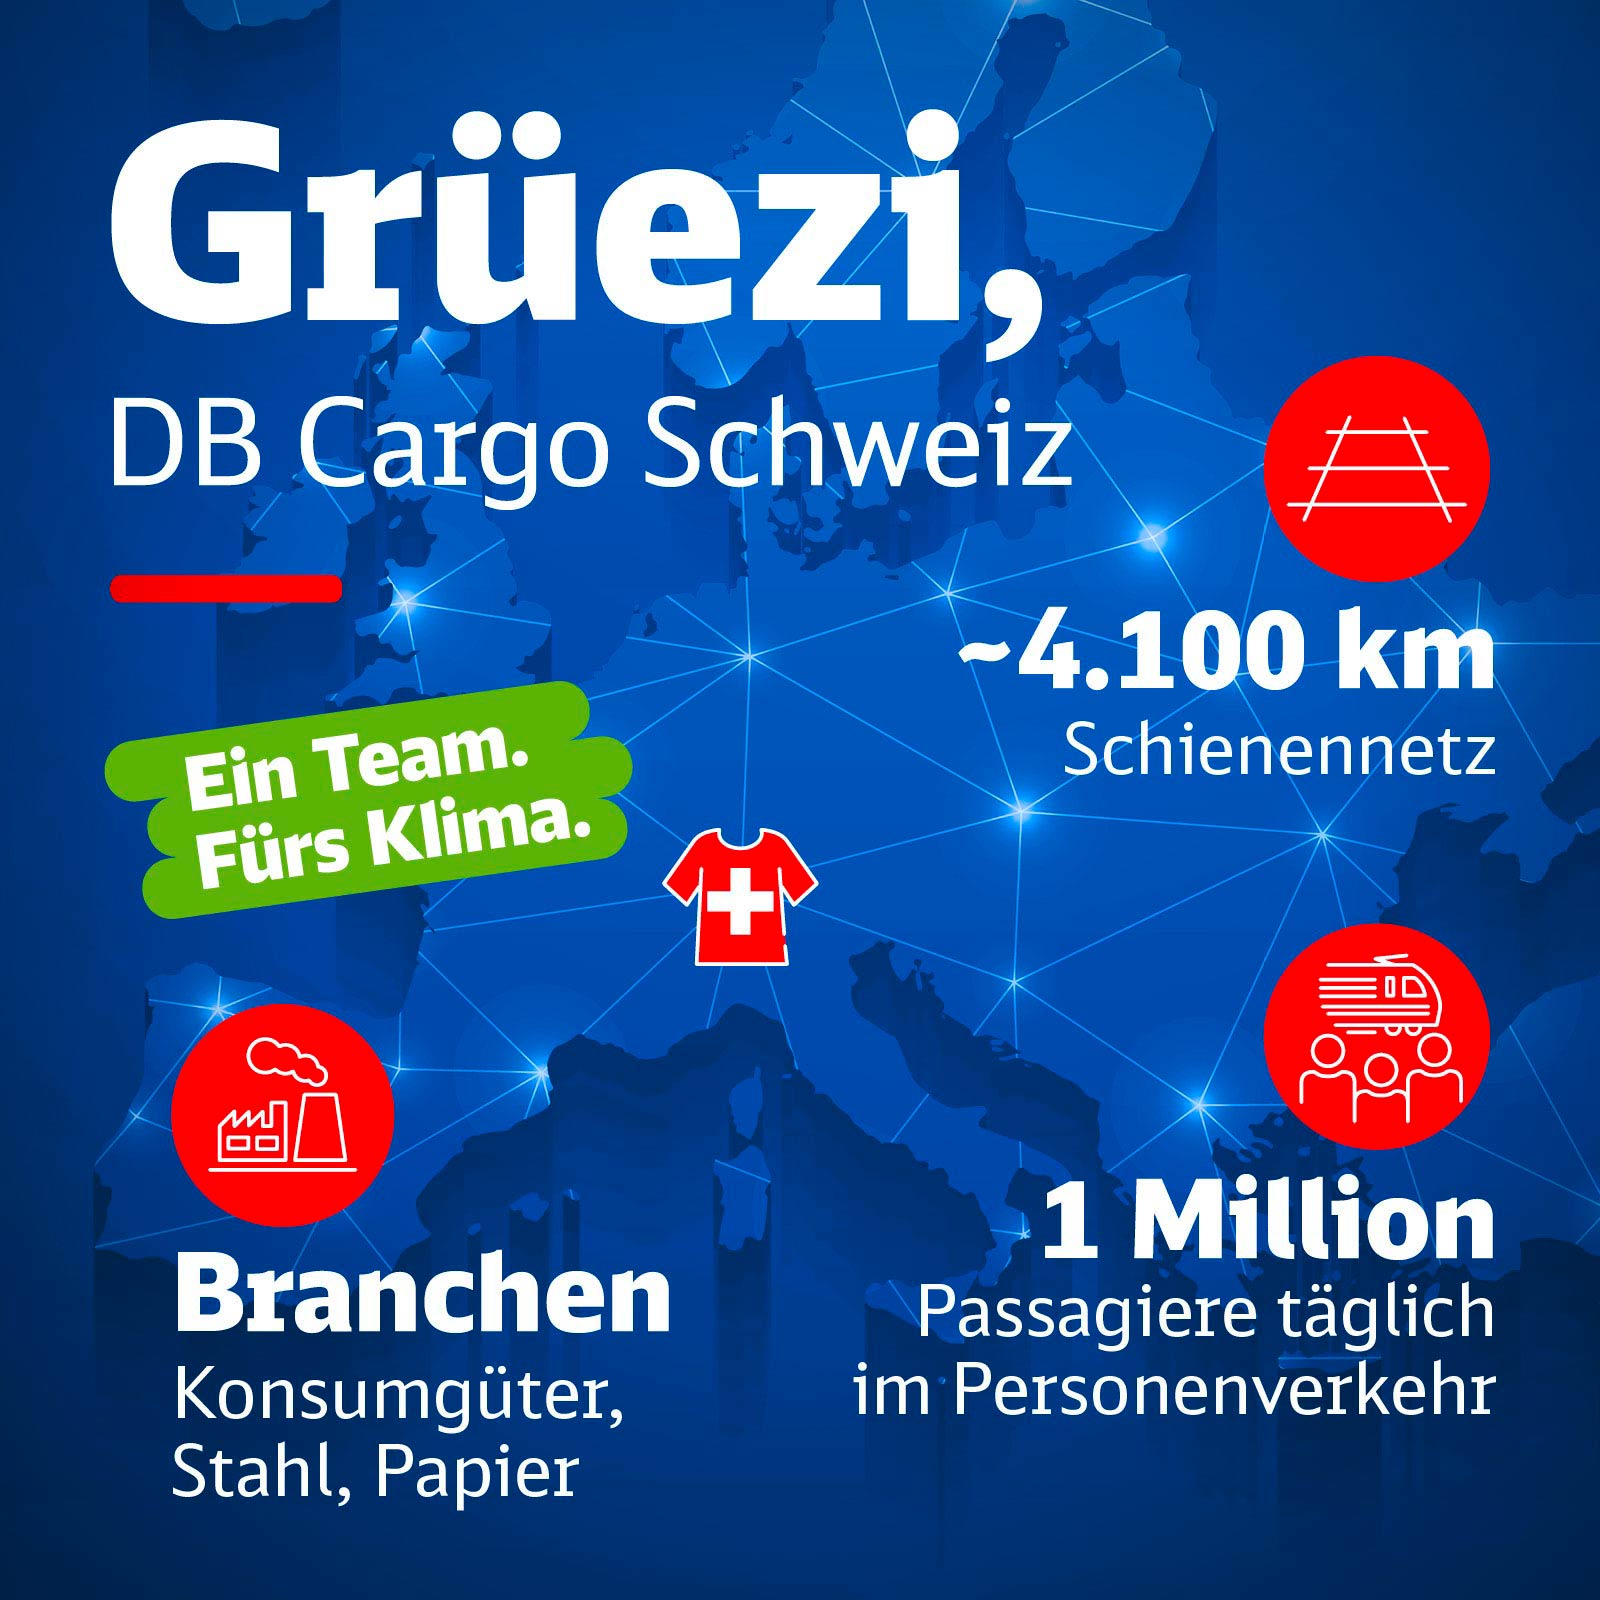 Eine Europakarte mit Infos zu DB Cargo Schweiz.